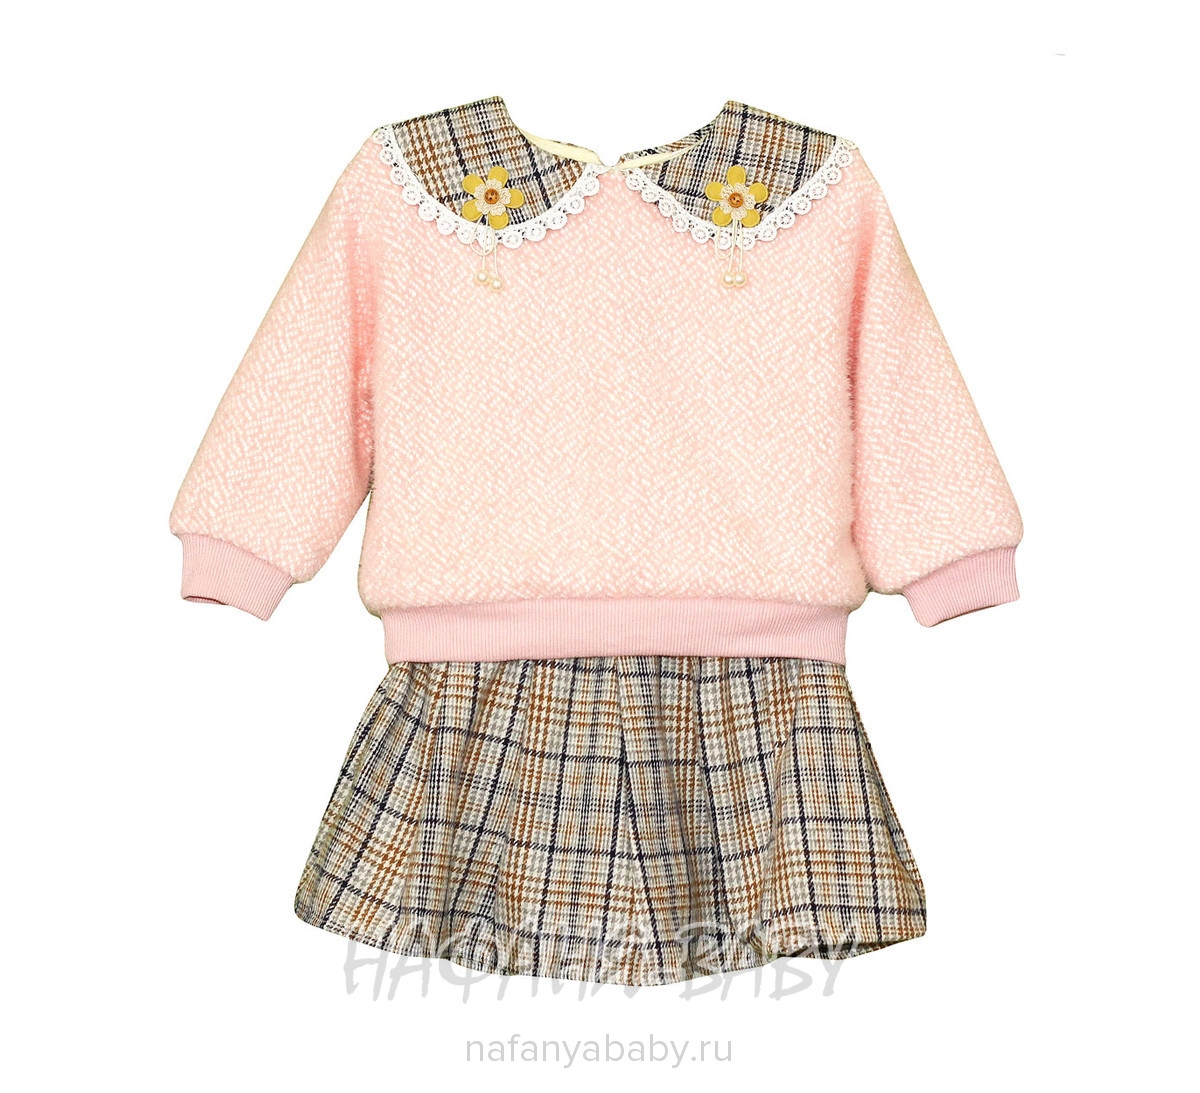 Детский костюм для девочки MYY арт: 1054, 5-9 лет, 1-4 года, цвет розовый, оптом Китай (Пекин)